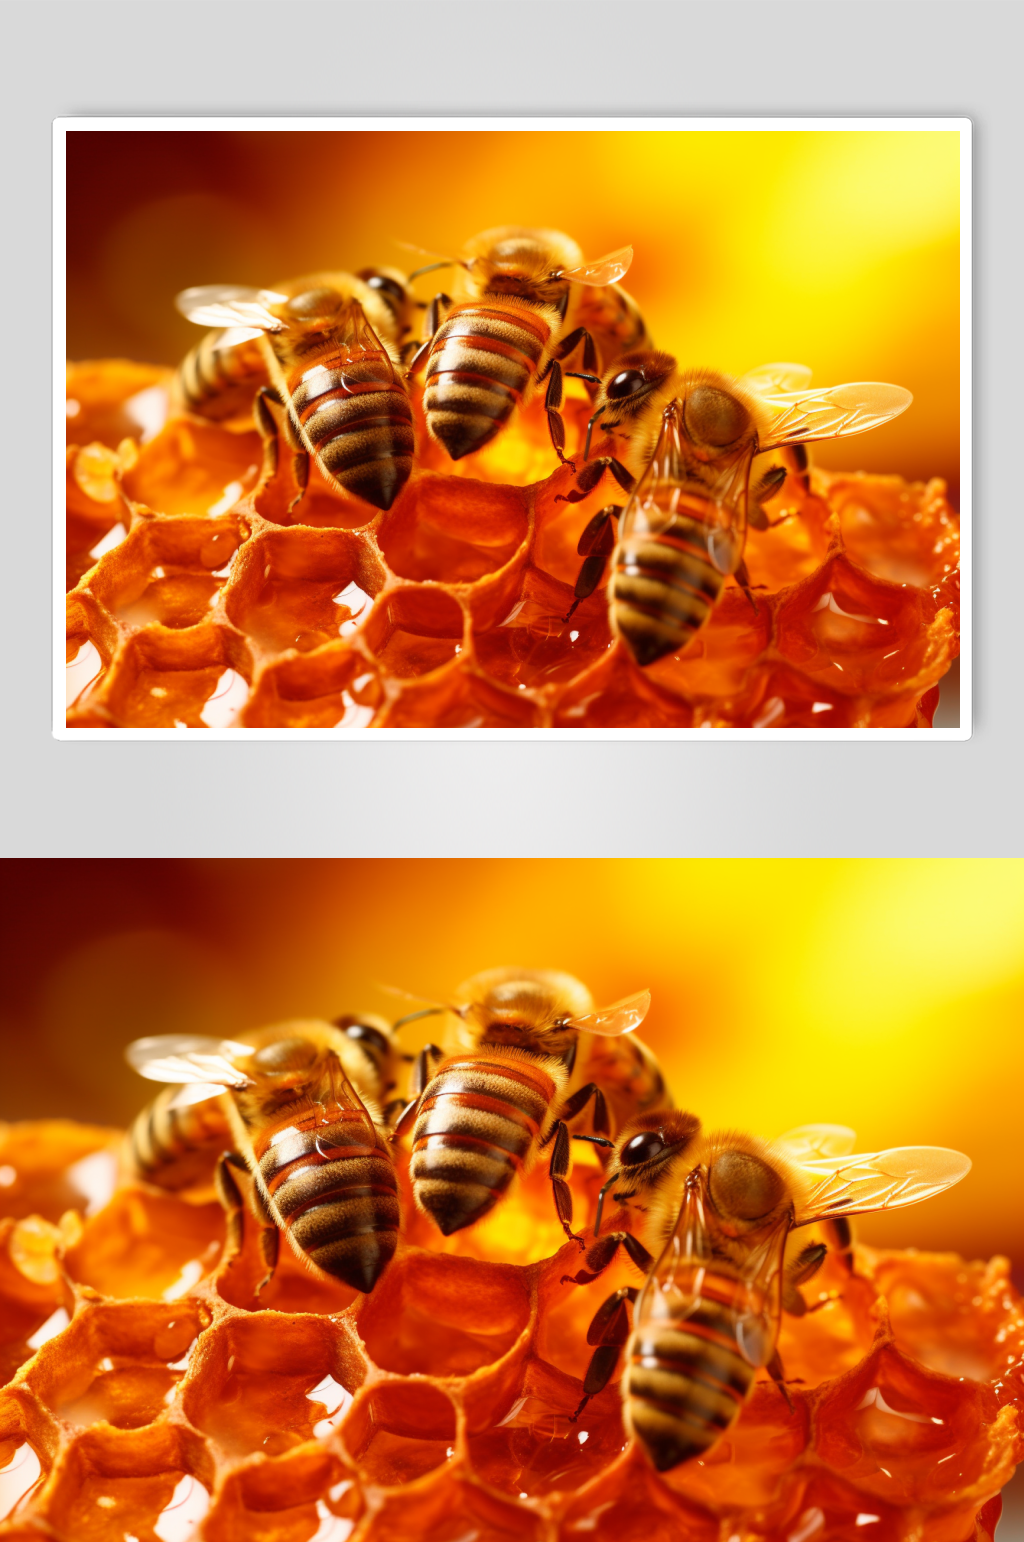 中蜂过箱技术 一定要仔细看-知花蜂蜜网-,蜂毒的作用与功效-牛奶加蜂蜜|酸奶蜂蜜面膜怎么做|蜂蜜水什么时候喝好有什么功效|红糖面膜|高海燕|知 ...